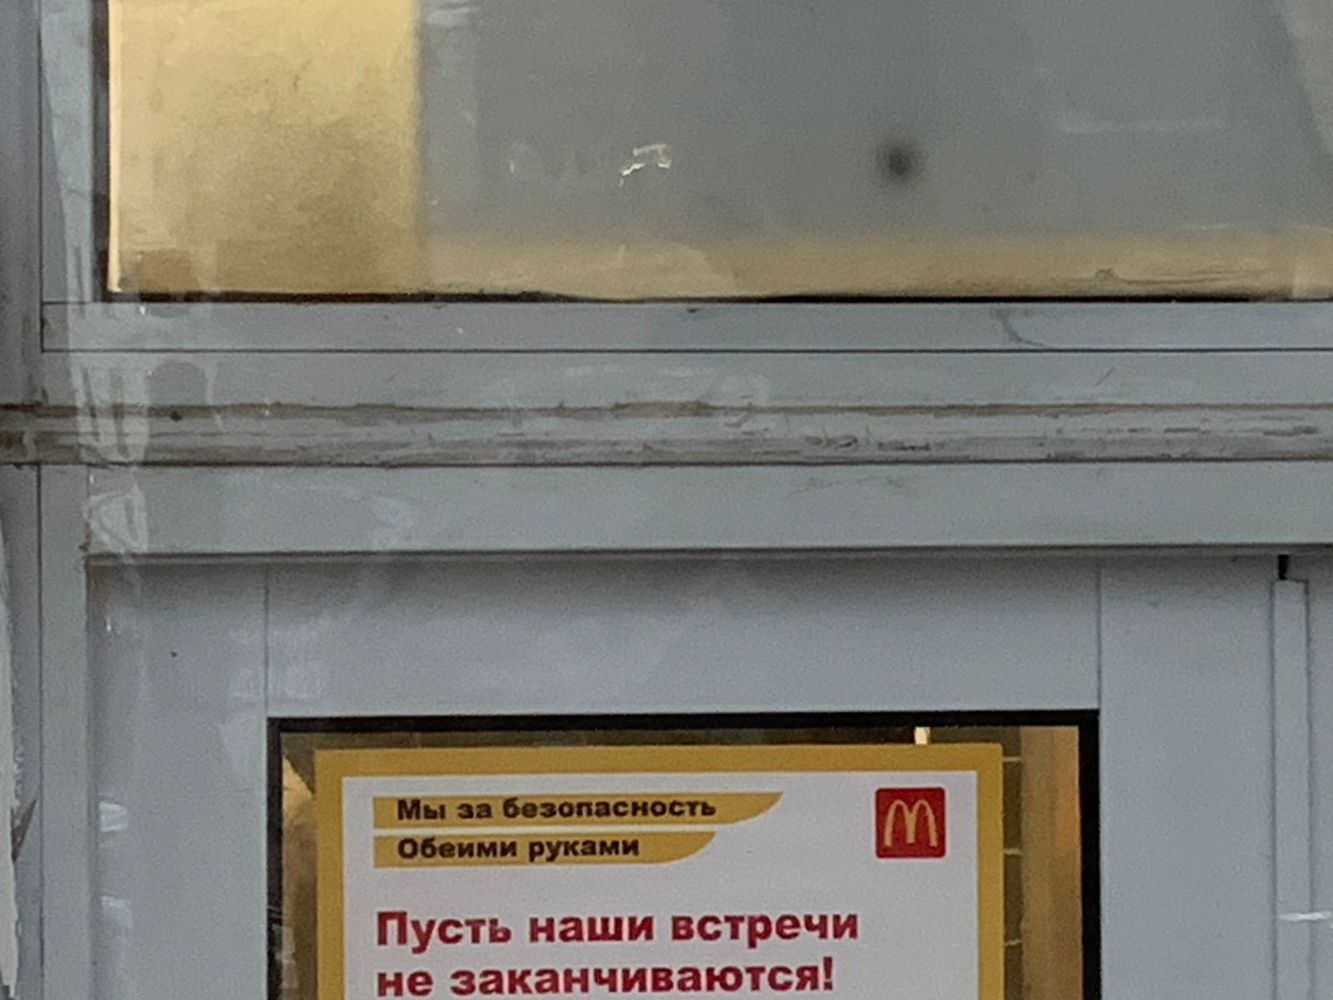 Астраханцы прохладно прощаются с Макдоналдсом: галерея ухода компании